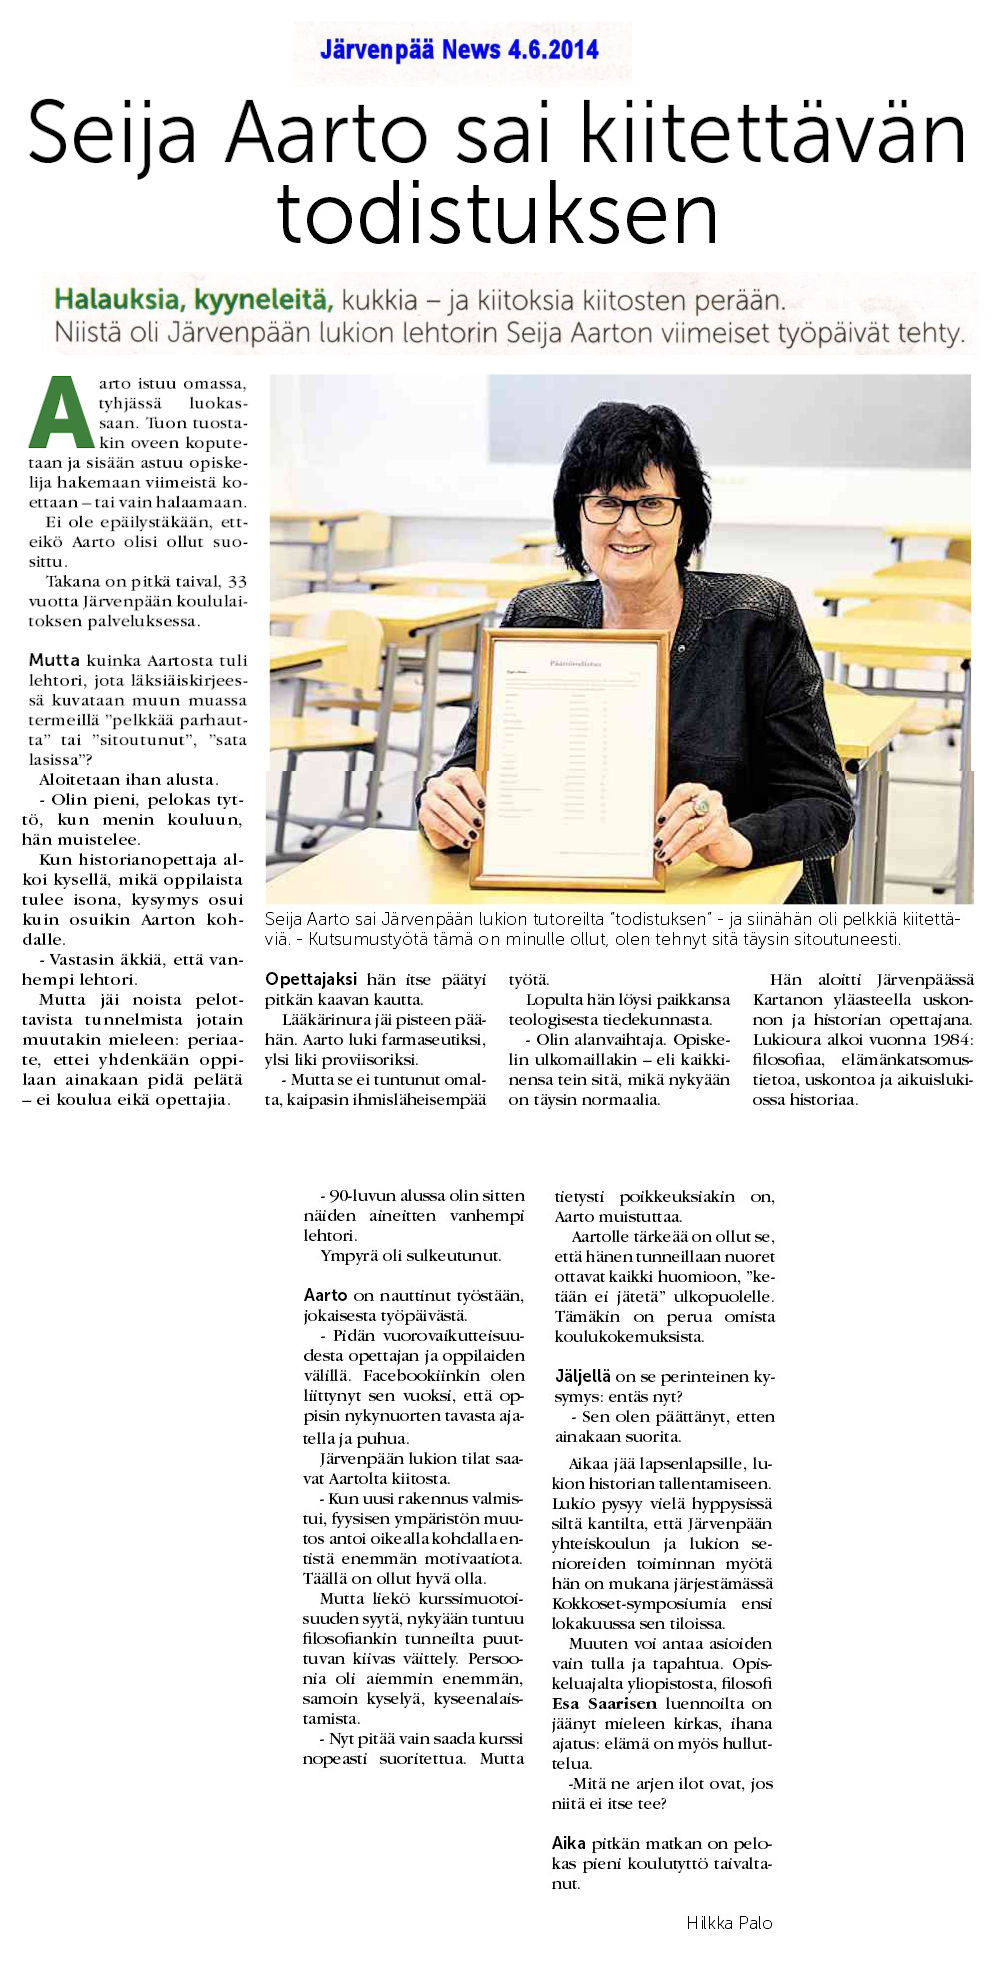 Järvenpää news